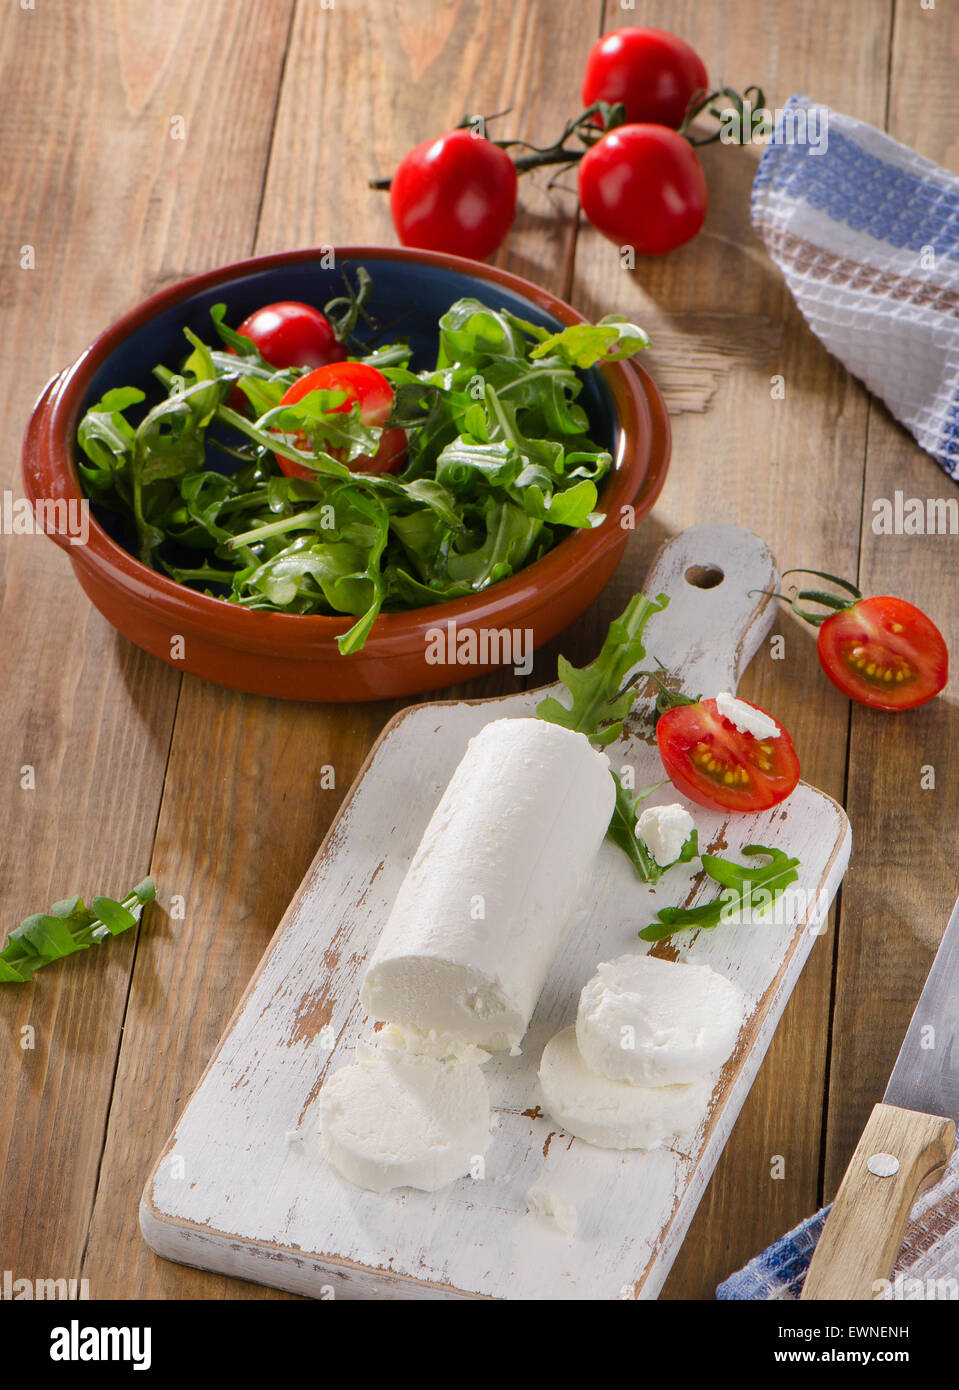 Le fromage de chèvre avec salade et tomates sur une table en bois. Banque D'Images